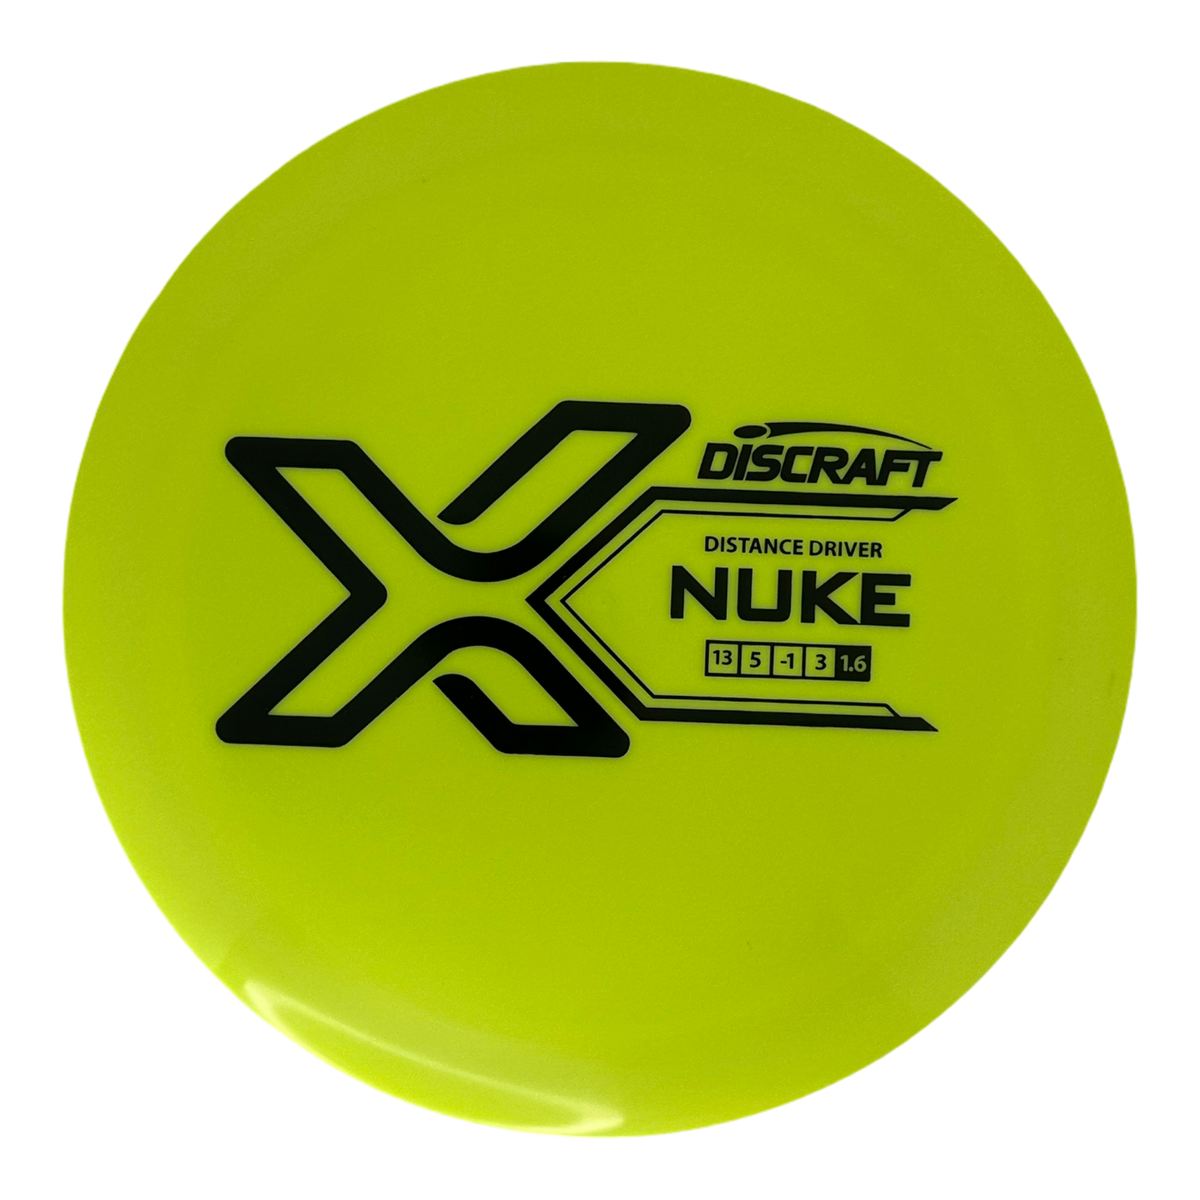 Discraft X Line Nuke